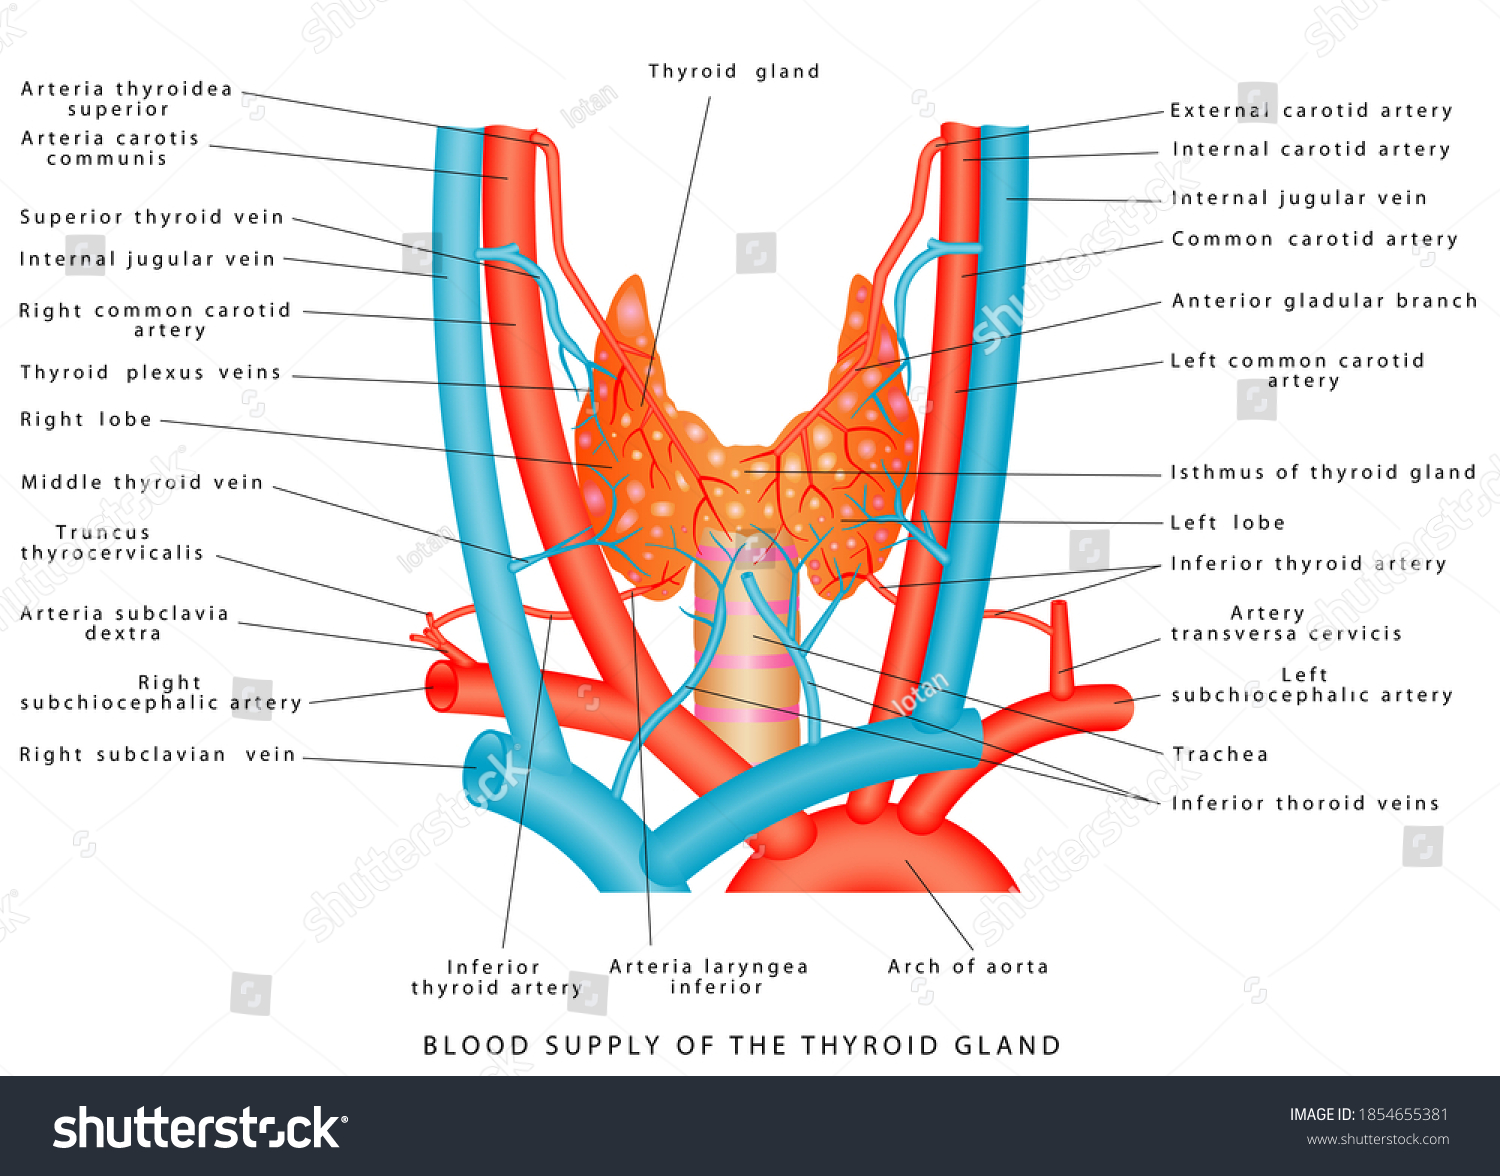 Артерии щитовидной железы. Артерии щитовидной железы анатомия. Кровоснабжение щитовидной железы анатомия. Артерии щитовидной железы схема. Кровоснабжение щитовидной железы топографическая анатомия.